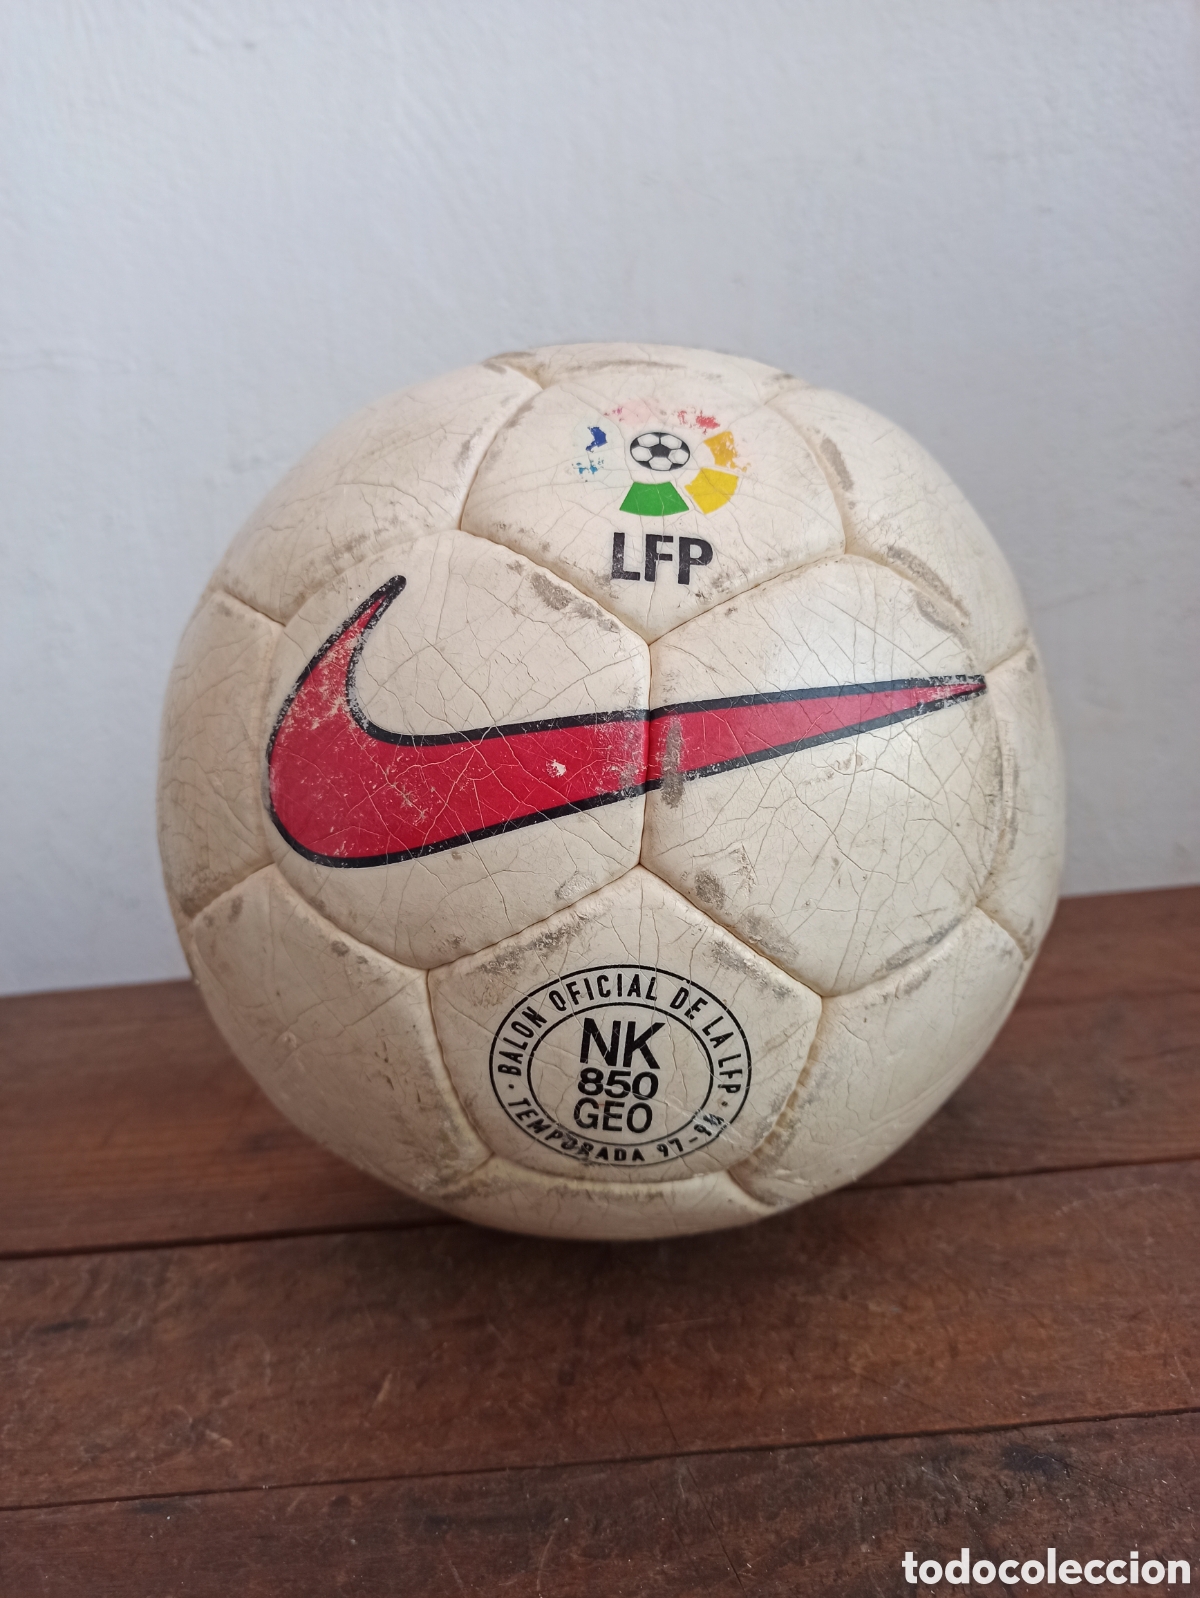 quemado Touhou propietario balón nike nk 850 geo - Comprar Material de Fútbol Antiguo en todocoleccion  - 364502066